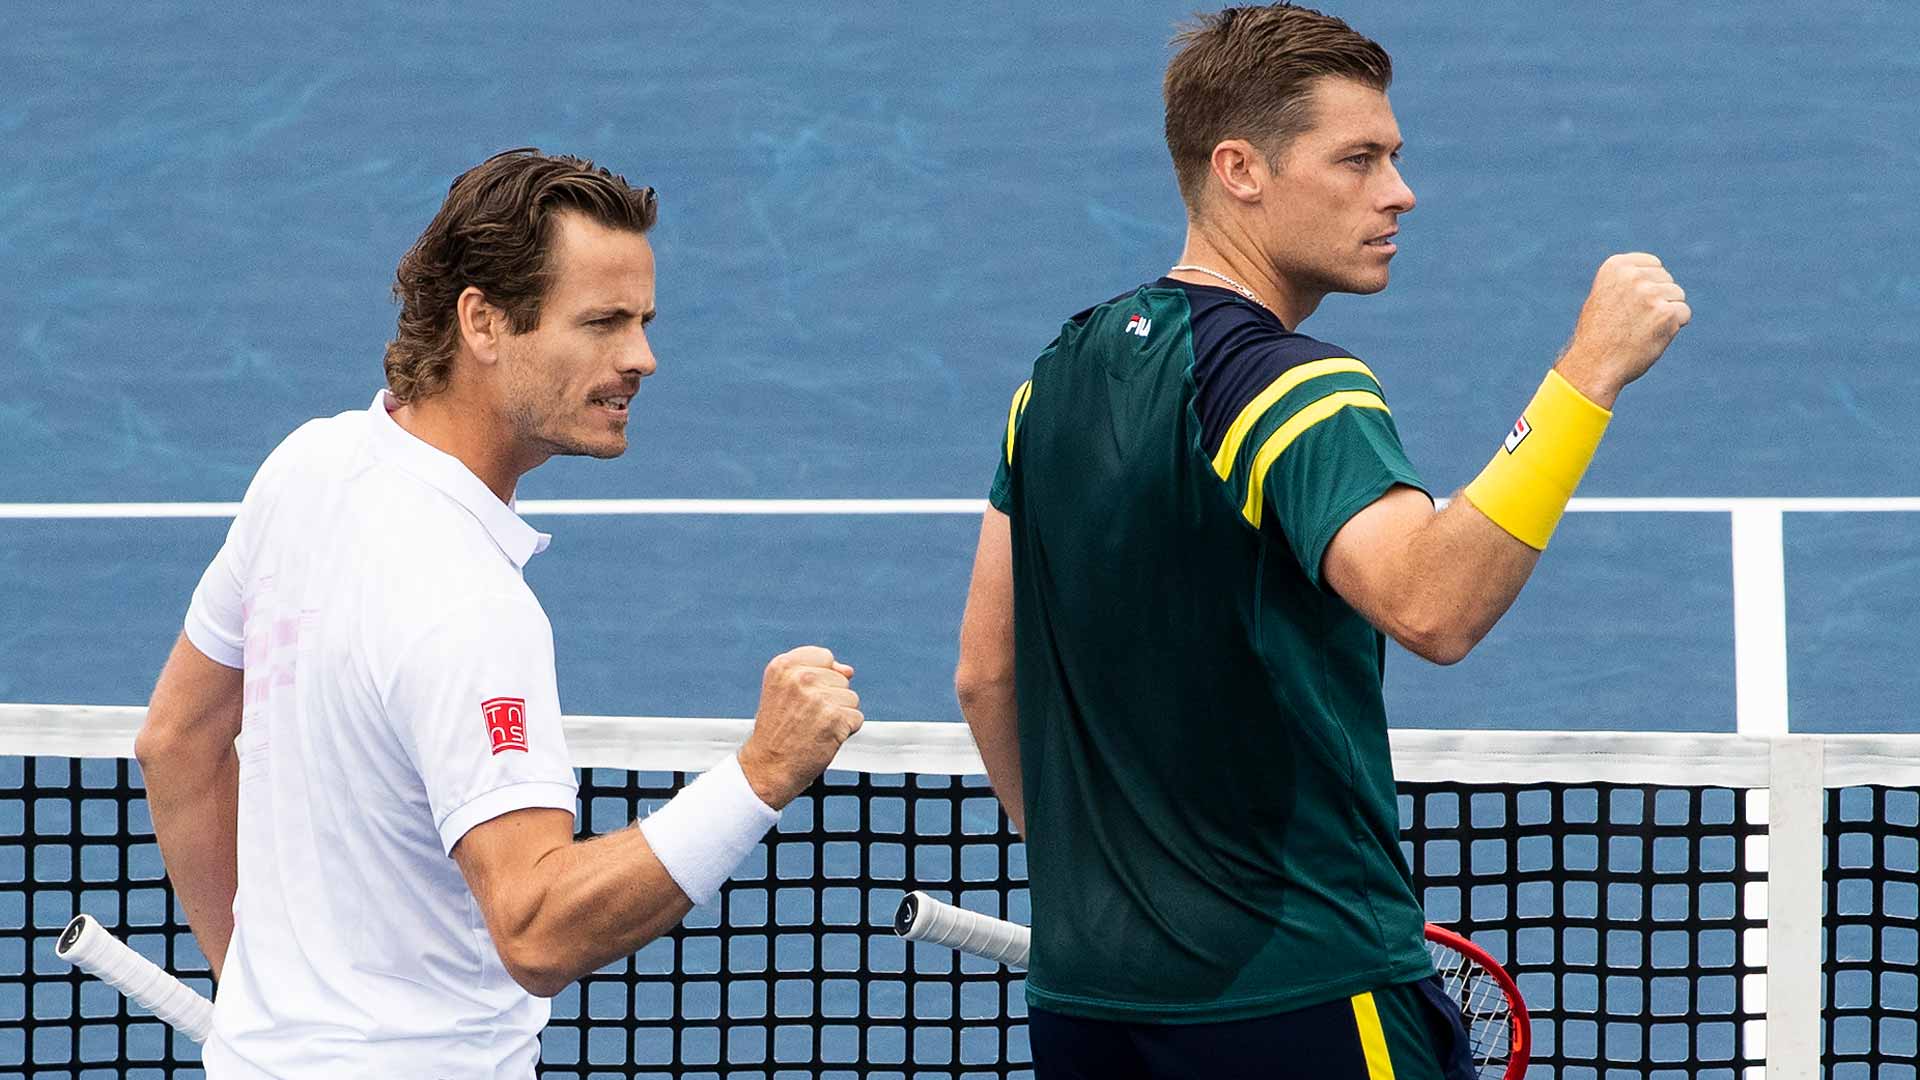 Primo duo Koolhof e Skupski a qualificarsi per le Nitto ATP Finals |  Tour ATP